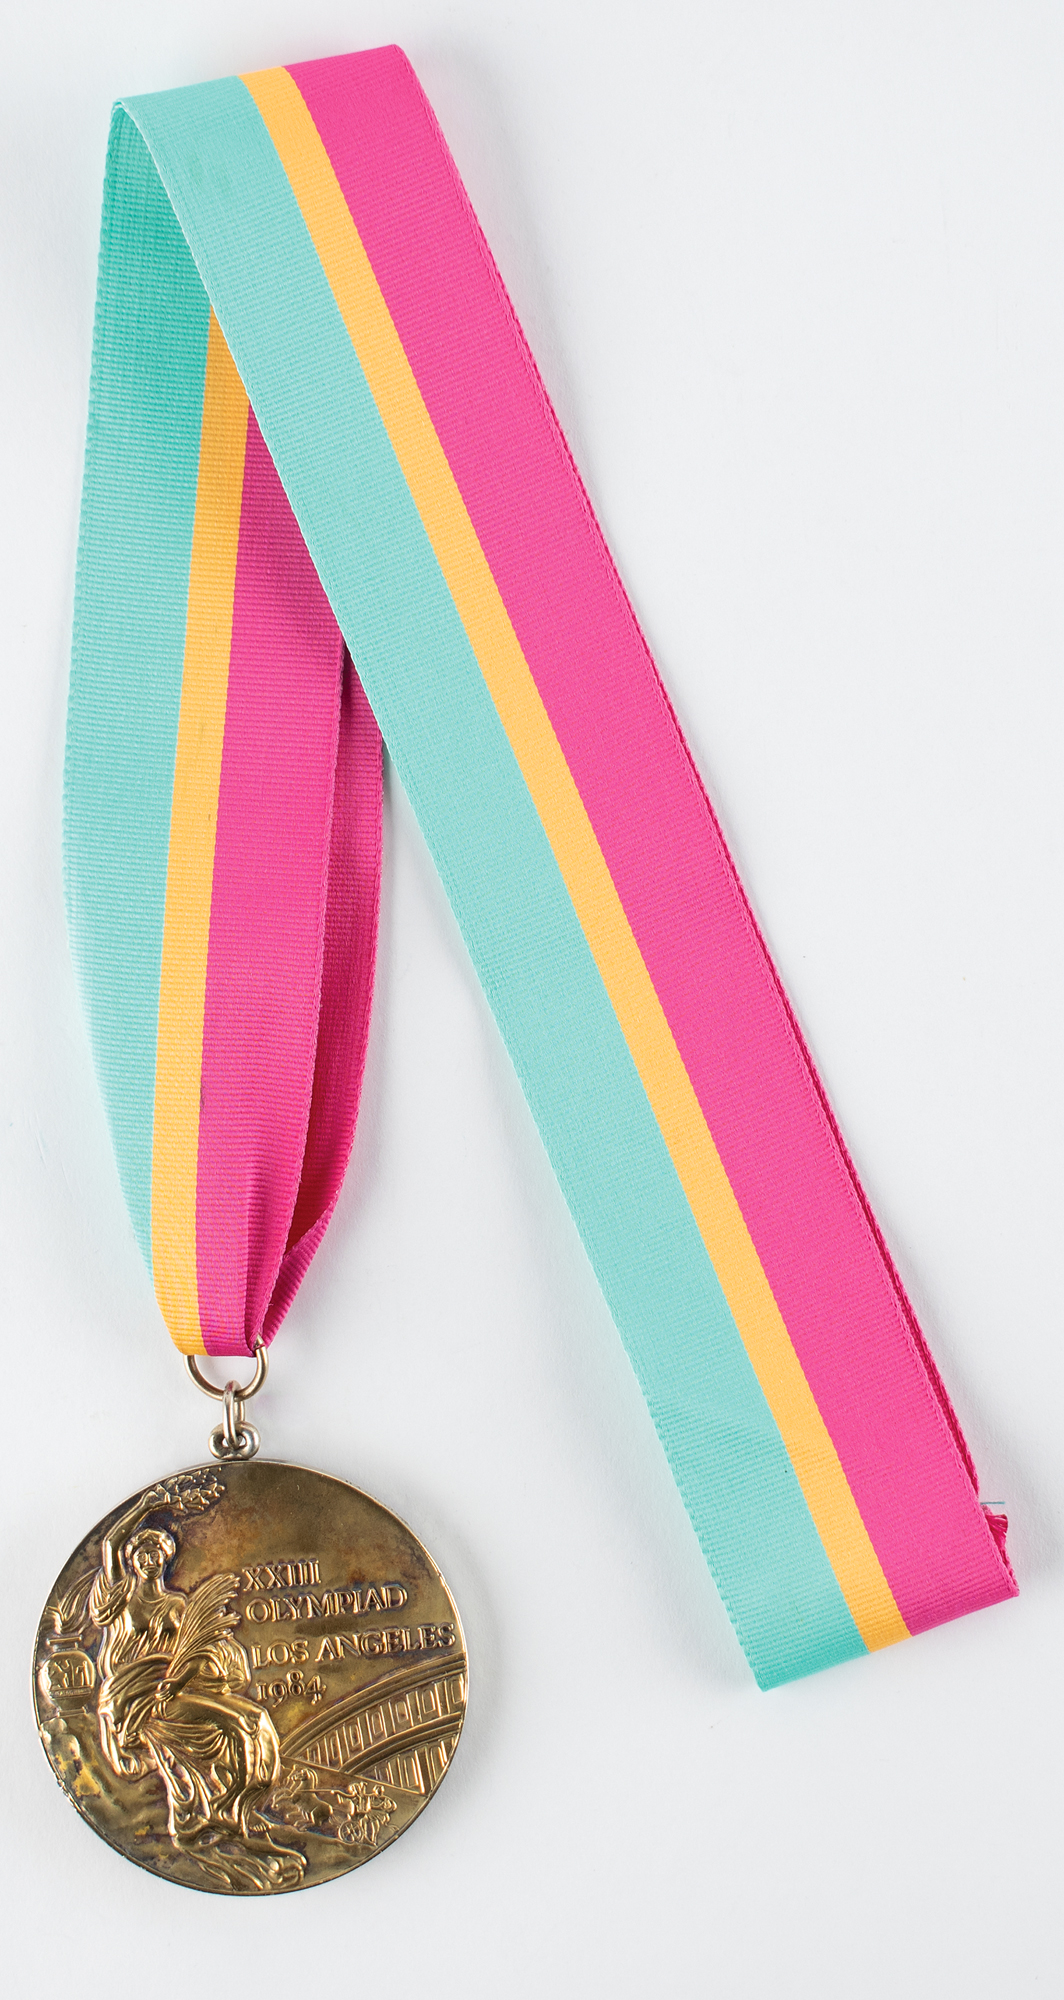 Lot #6125 Los Angeles 1984 Summer Olympics Gold Winner's Medal